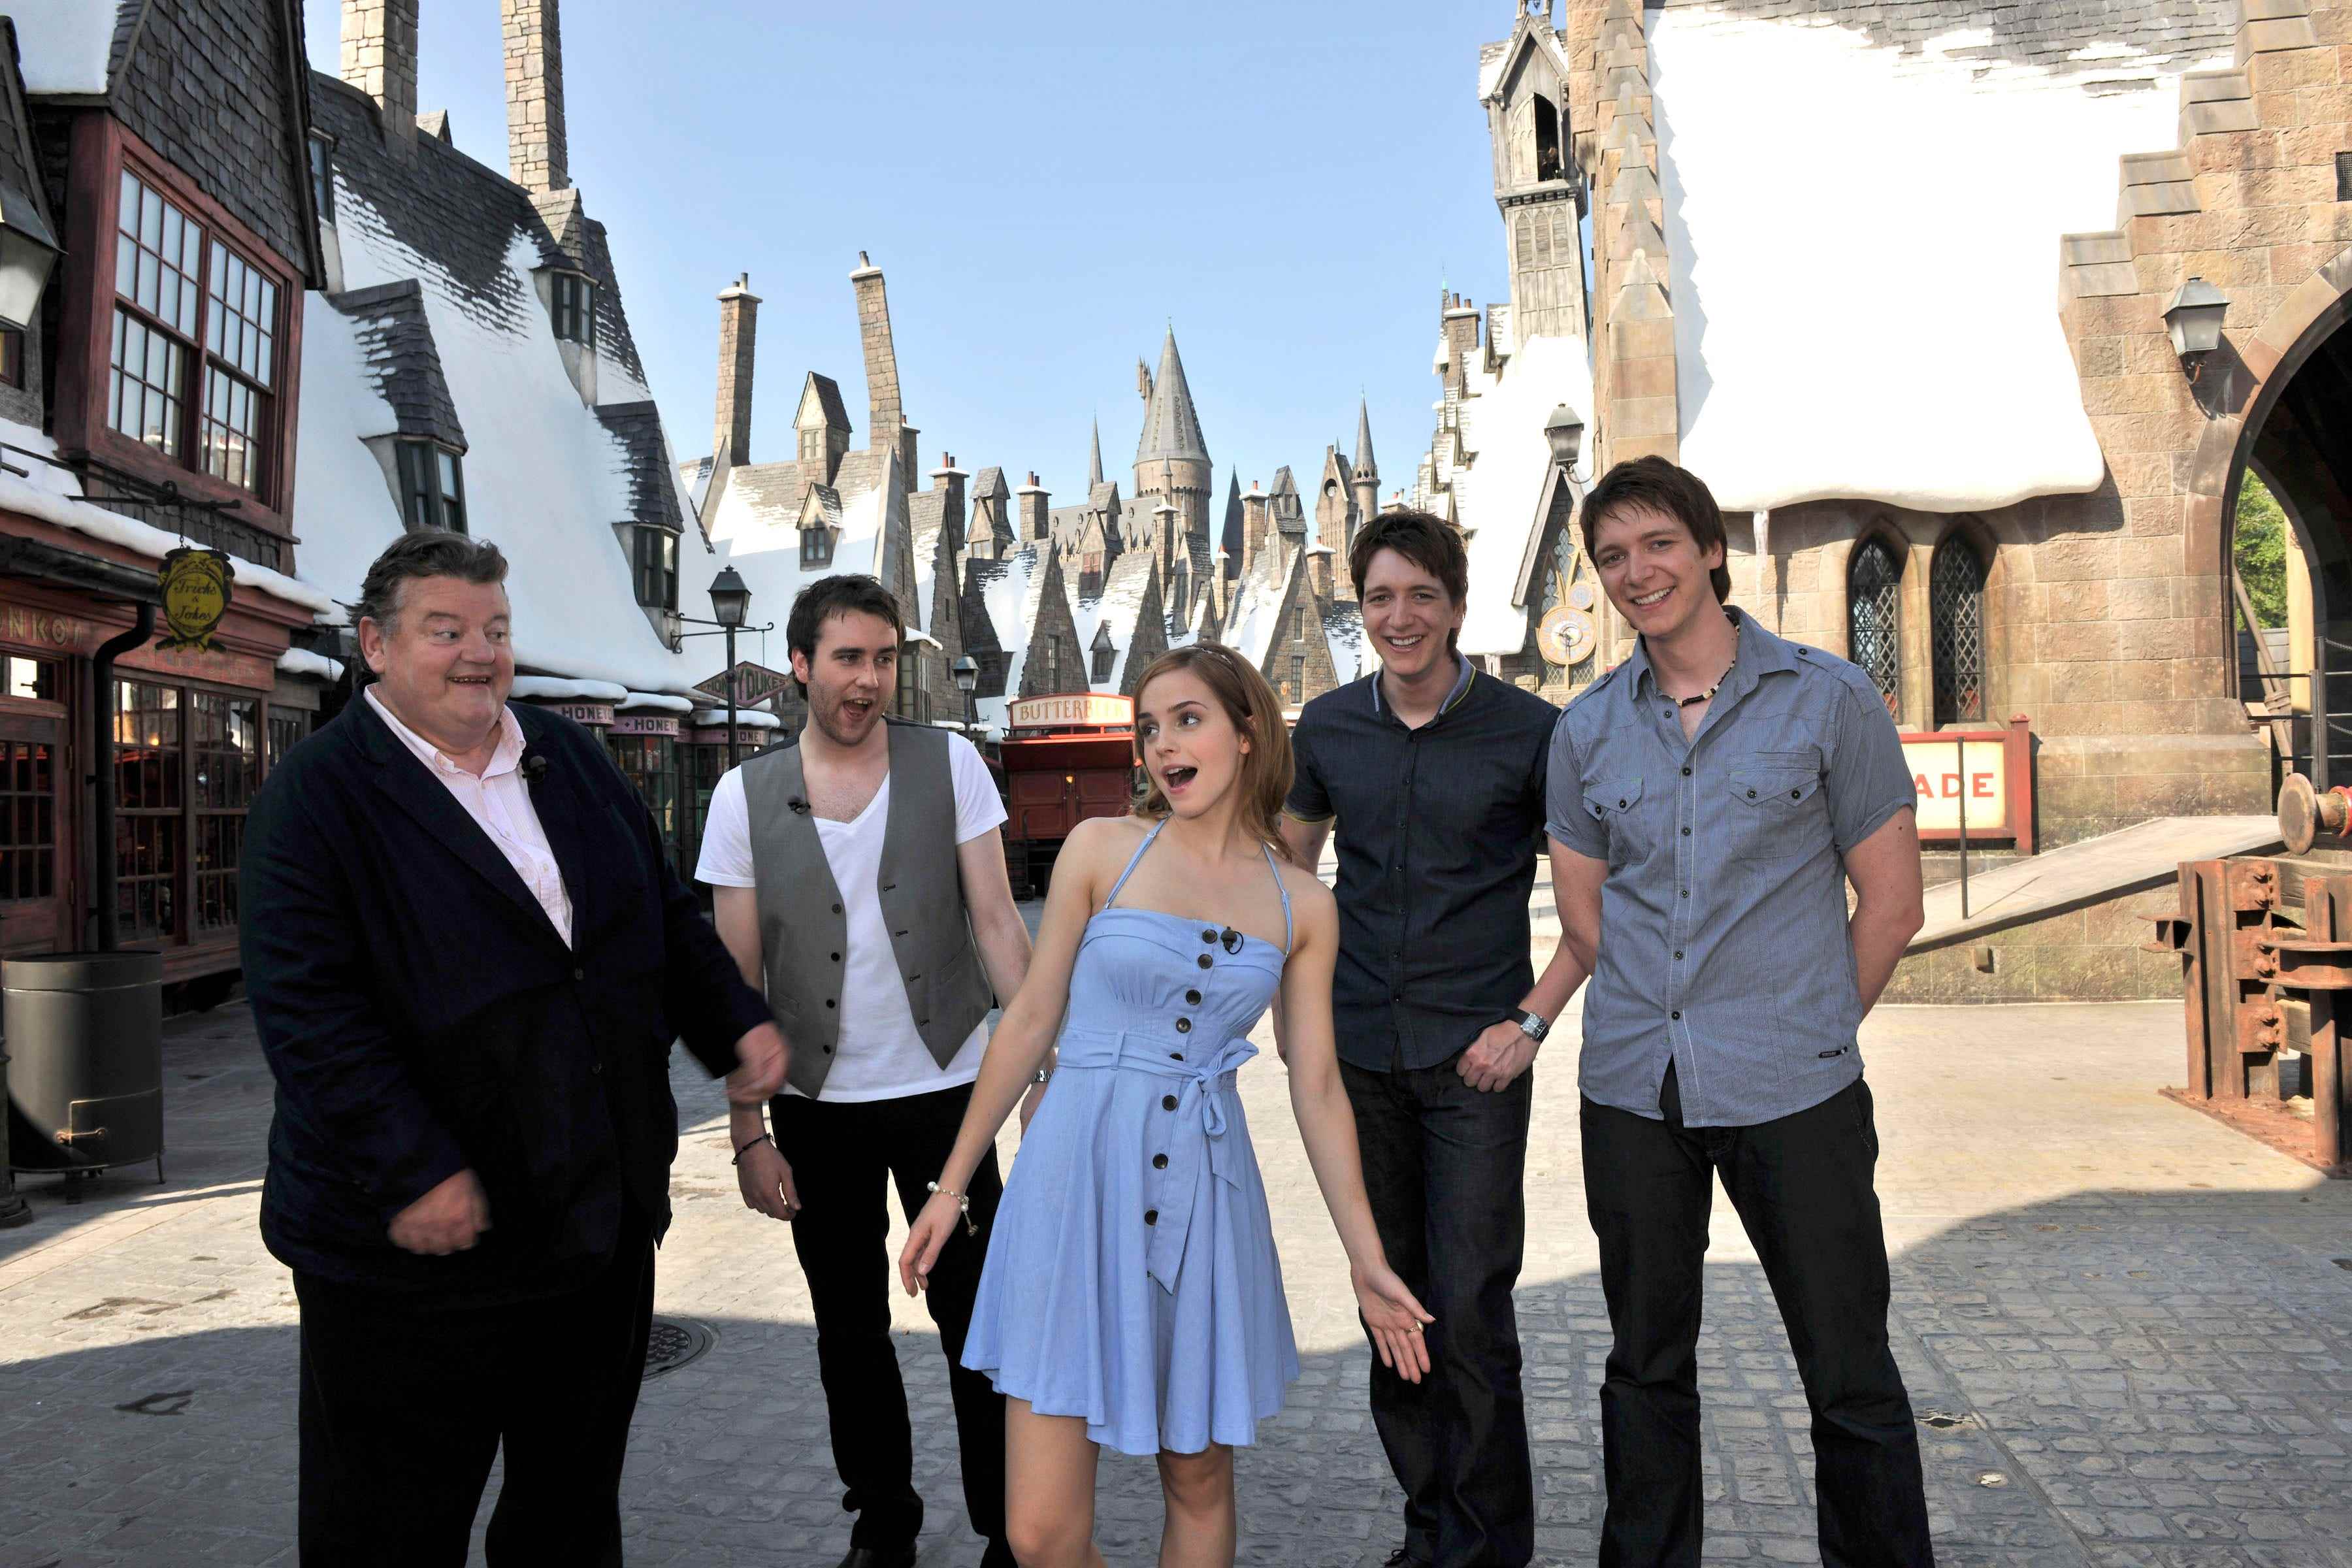 Die Harry-Potter-Filmstars Robbie Coltrane, Matthew Lewis, Emma Watson, Oliver Phelps und James Phelps begannen ihre Sneak-Peek-Tour durch die Zauberwelt von Harry Potter mit dem Betreten von Hogsmeade am 20. Mai 2010 in Orlando, Florida